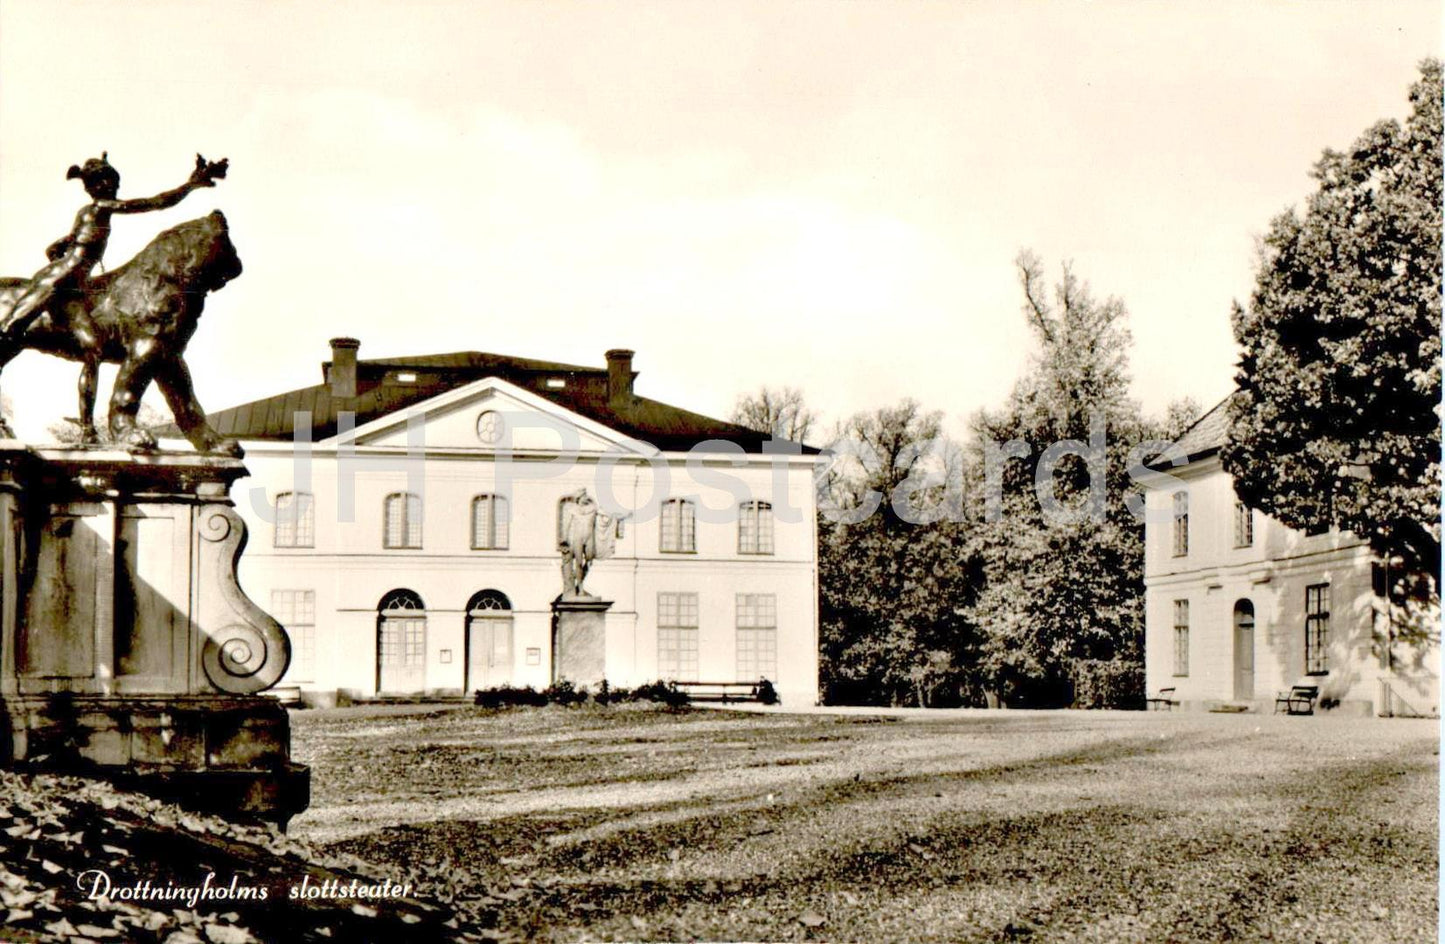 Drottningholms slottsteater - Drottningholm - castle - theatre - 6001/1 - old postcard - Sweden - unused